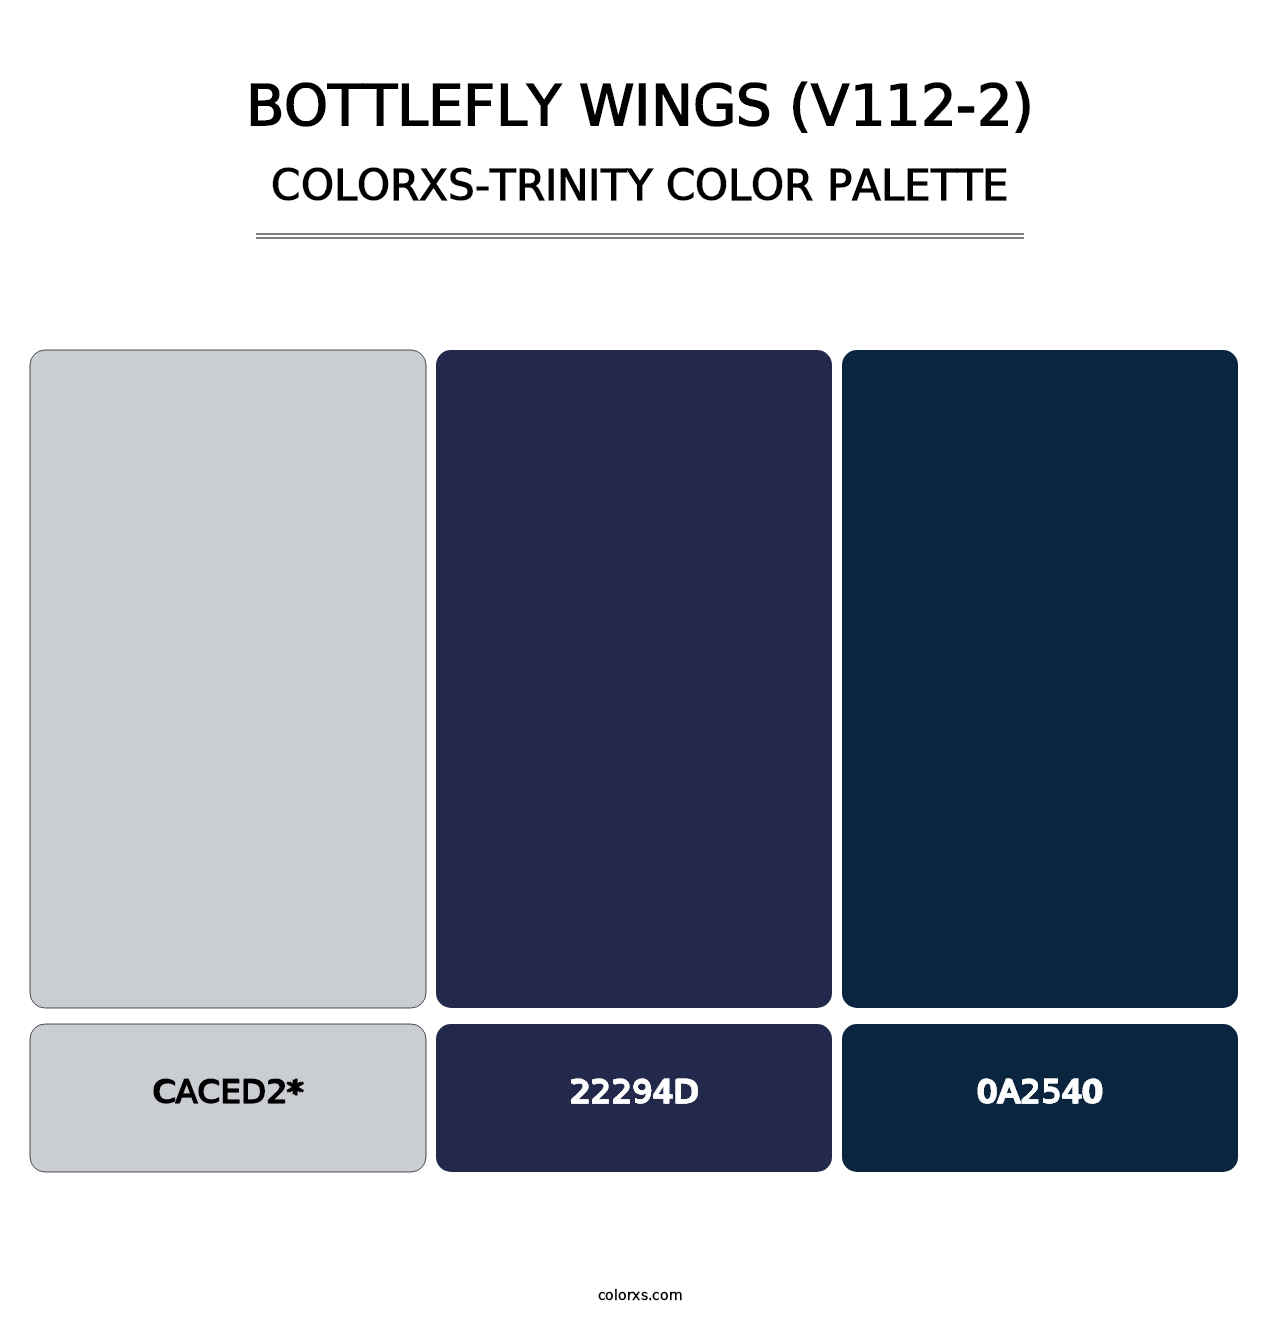 Bottlefly Wings (V112-2) - Colorxs Trinity Palette